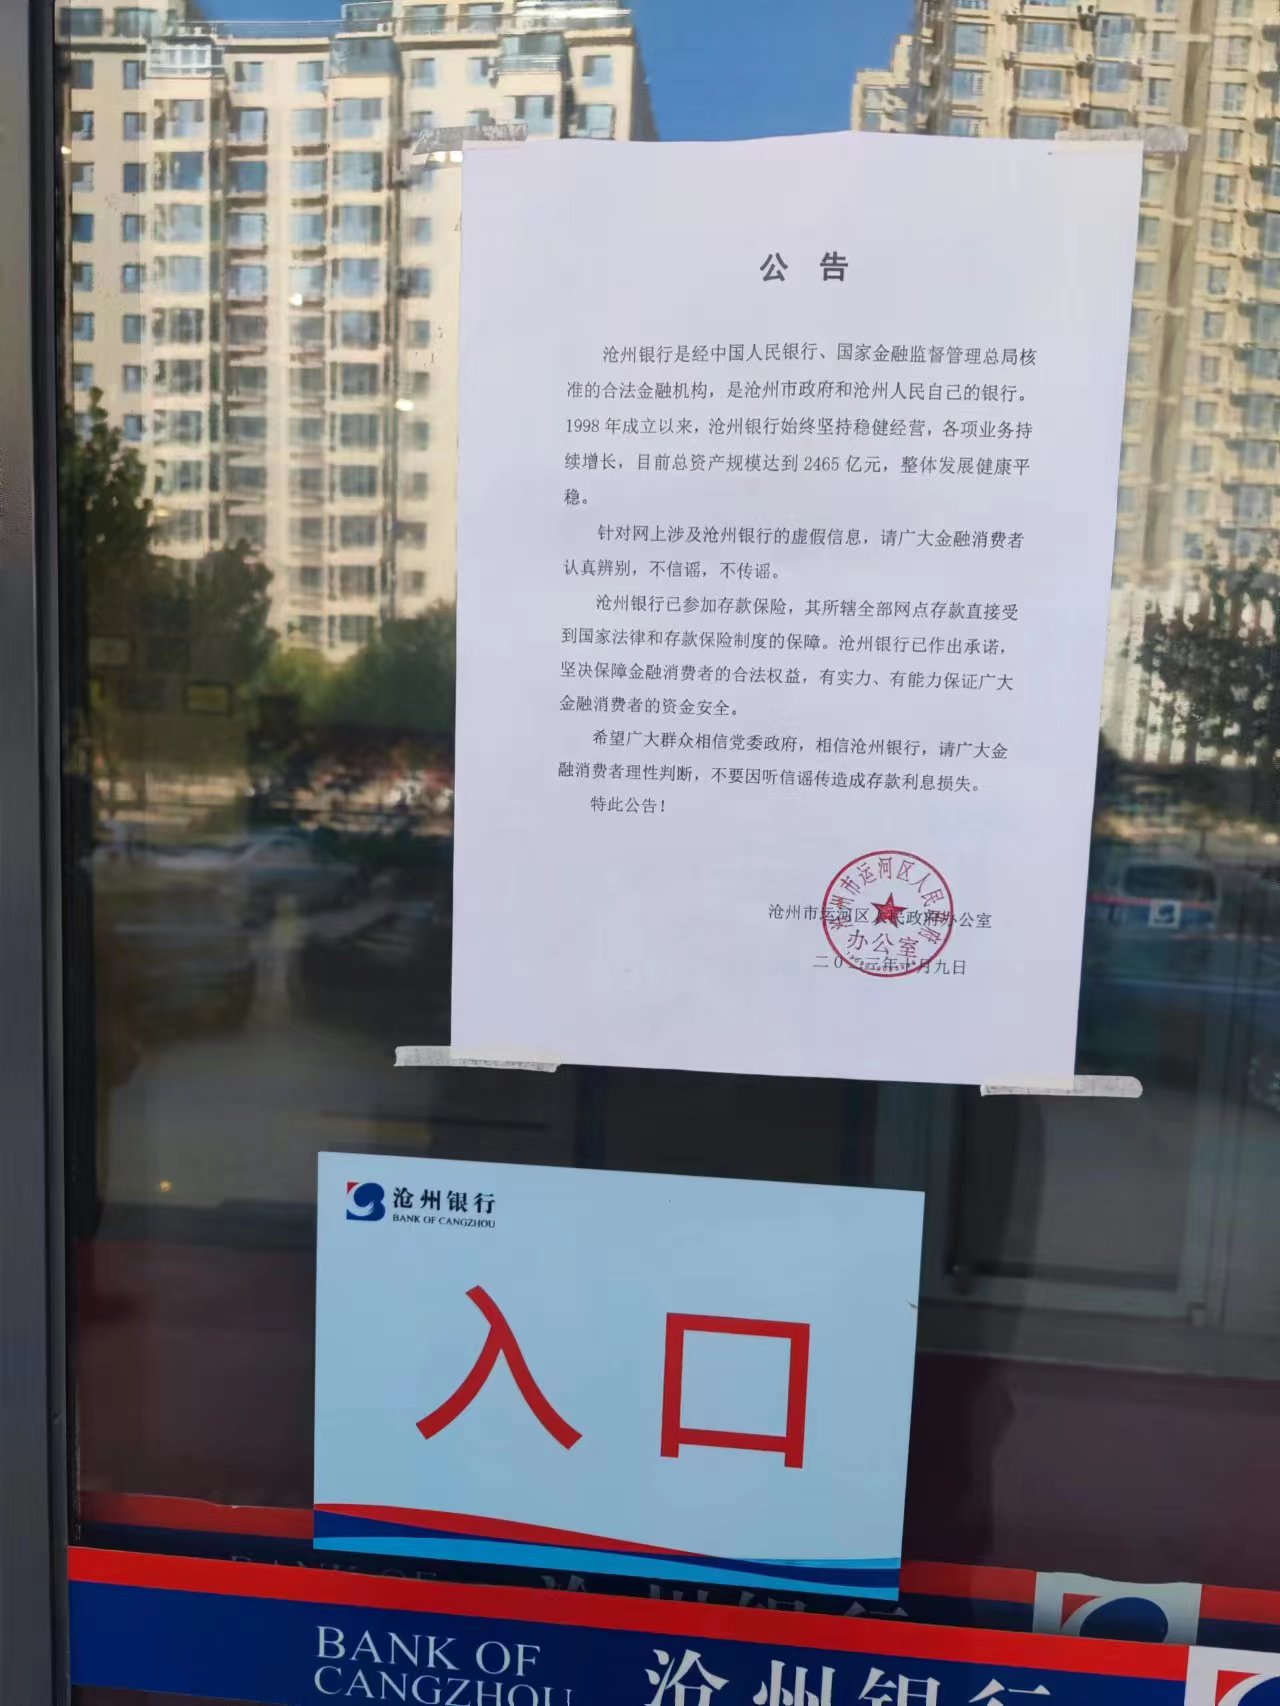 银行大门处区政府办公室张贴公告 第一财经记者徐宇摄